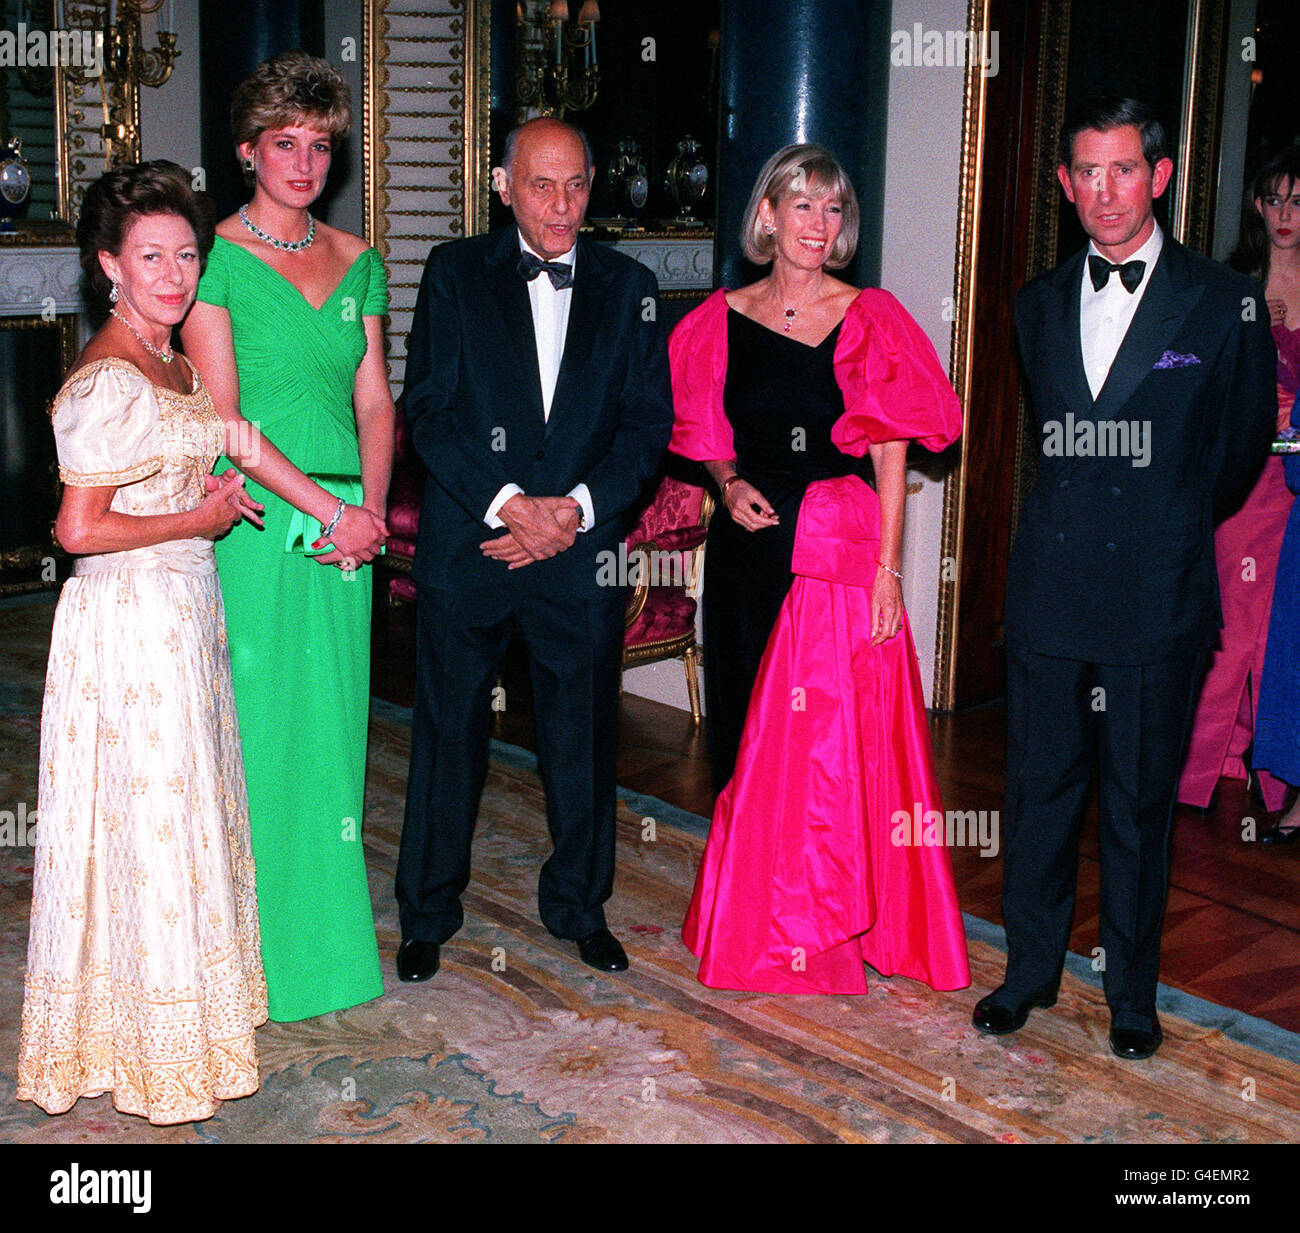 PA News 22/10/92 L-R: Princess Margaret, la princesa de Gales, SIR GEORGE SOLTI, Lady SOLTI y el Príncipe de Gales en el Palacio de Buckingham para SIR GEORGE SOLTI'S 8oth fiesta de cumpleaños. Foto de stock